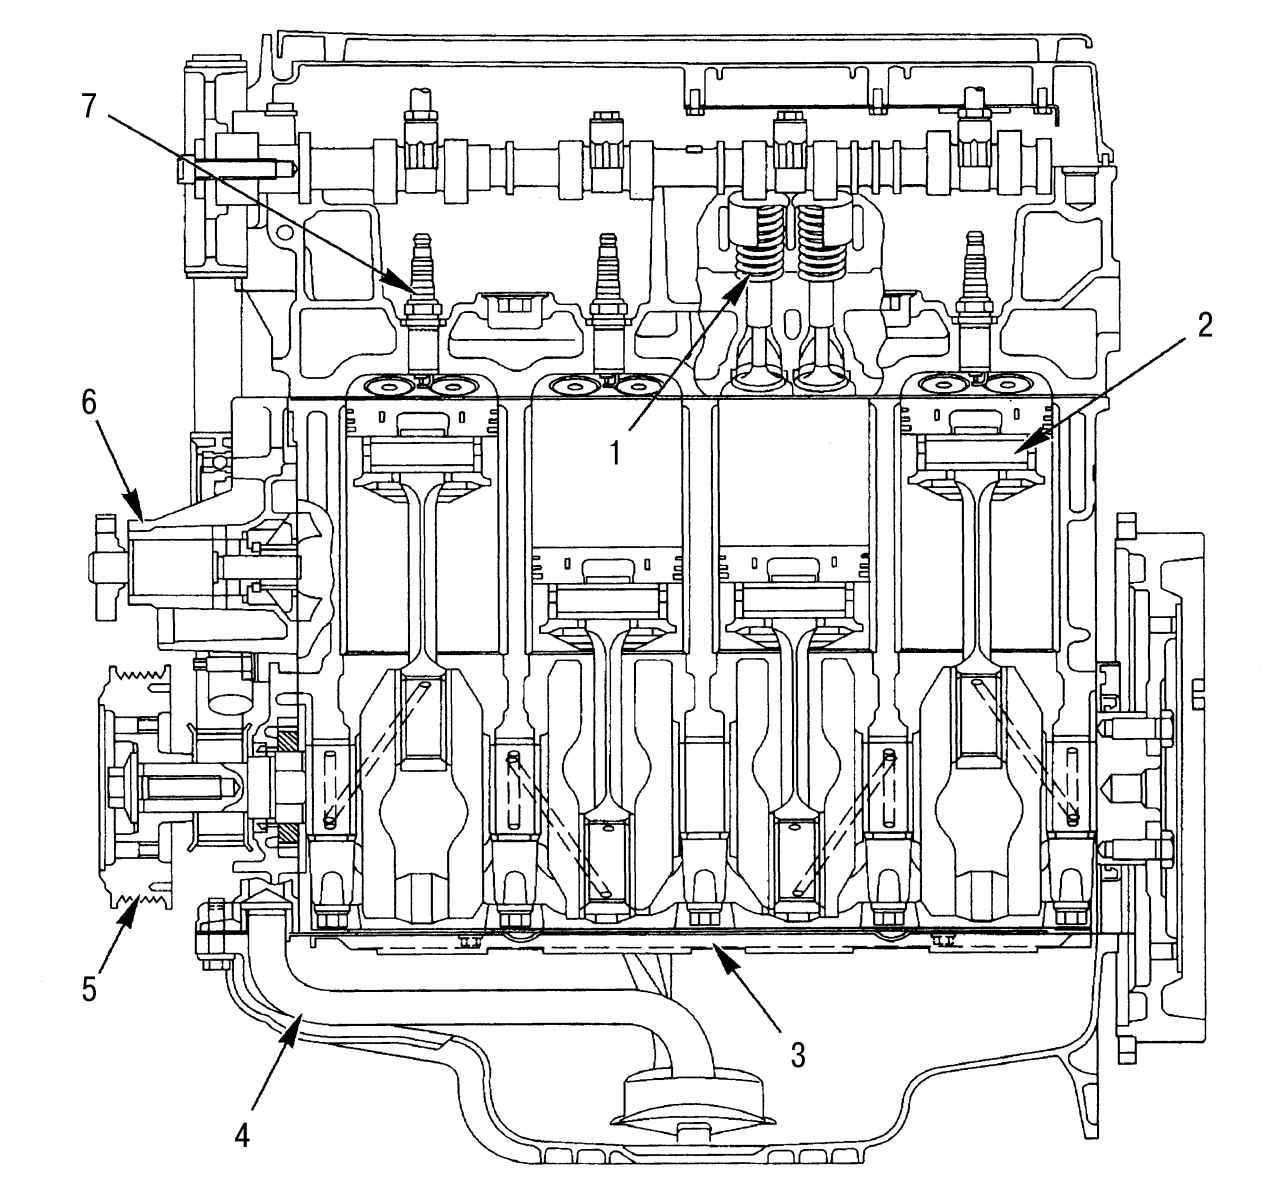 Устройство автомобиля форд. Система смазки двигателя Форд фокус 2 1.6 100. Система смазки двигателя Форд фокус 2 1.8. Двигатель Форд фокус 2 1.4 в разрезе. Схема ДВС Форд фокус 2 1.6.